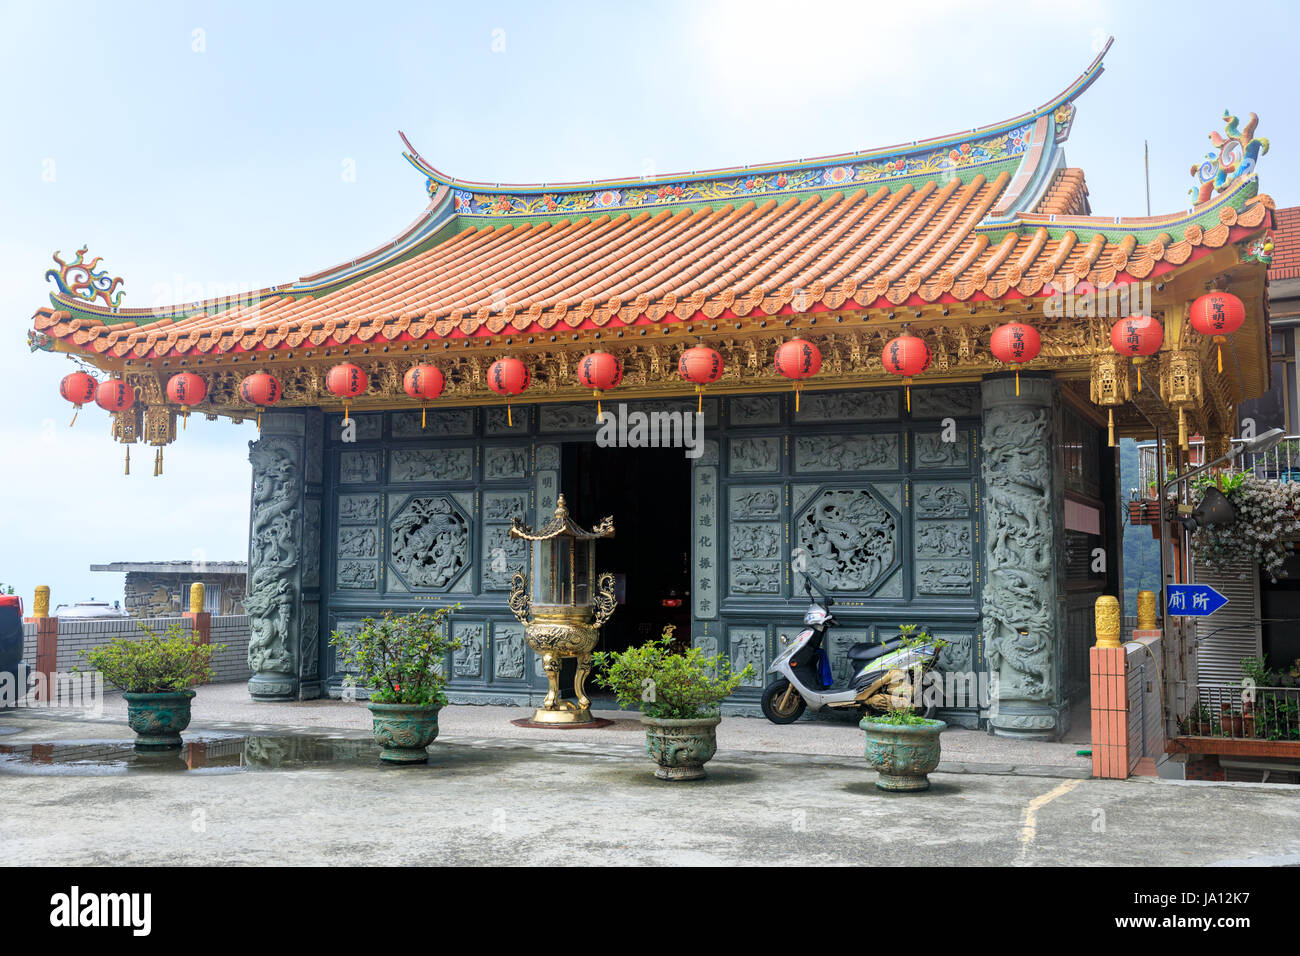 May 25, 2017 Xiahai Cheng Huang Temple (Zhao Ling Miao) at Jioufen, Taiwan - Tour destination Stock Photo